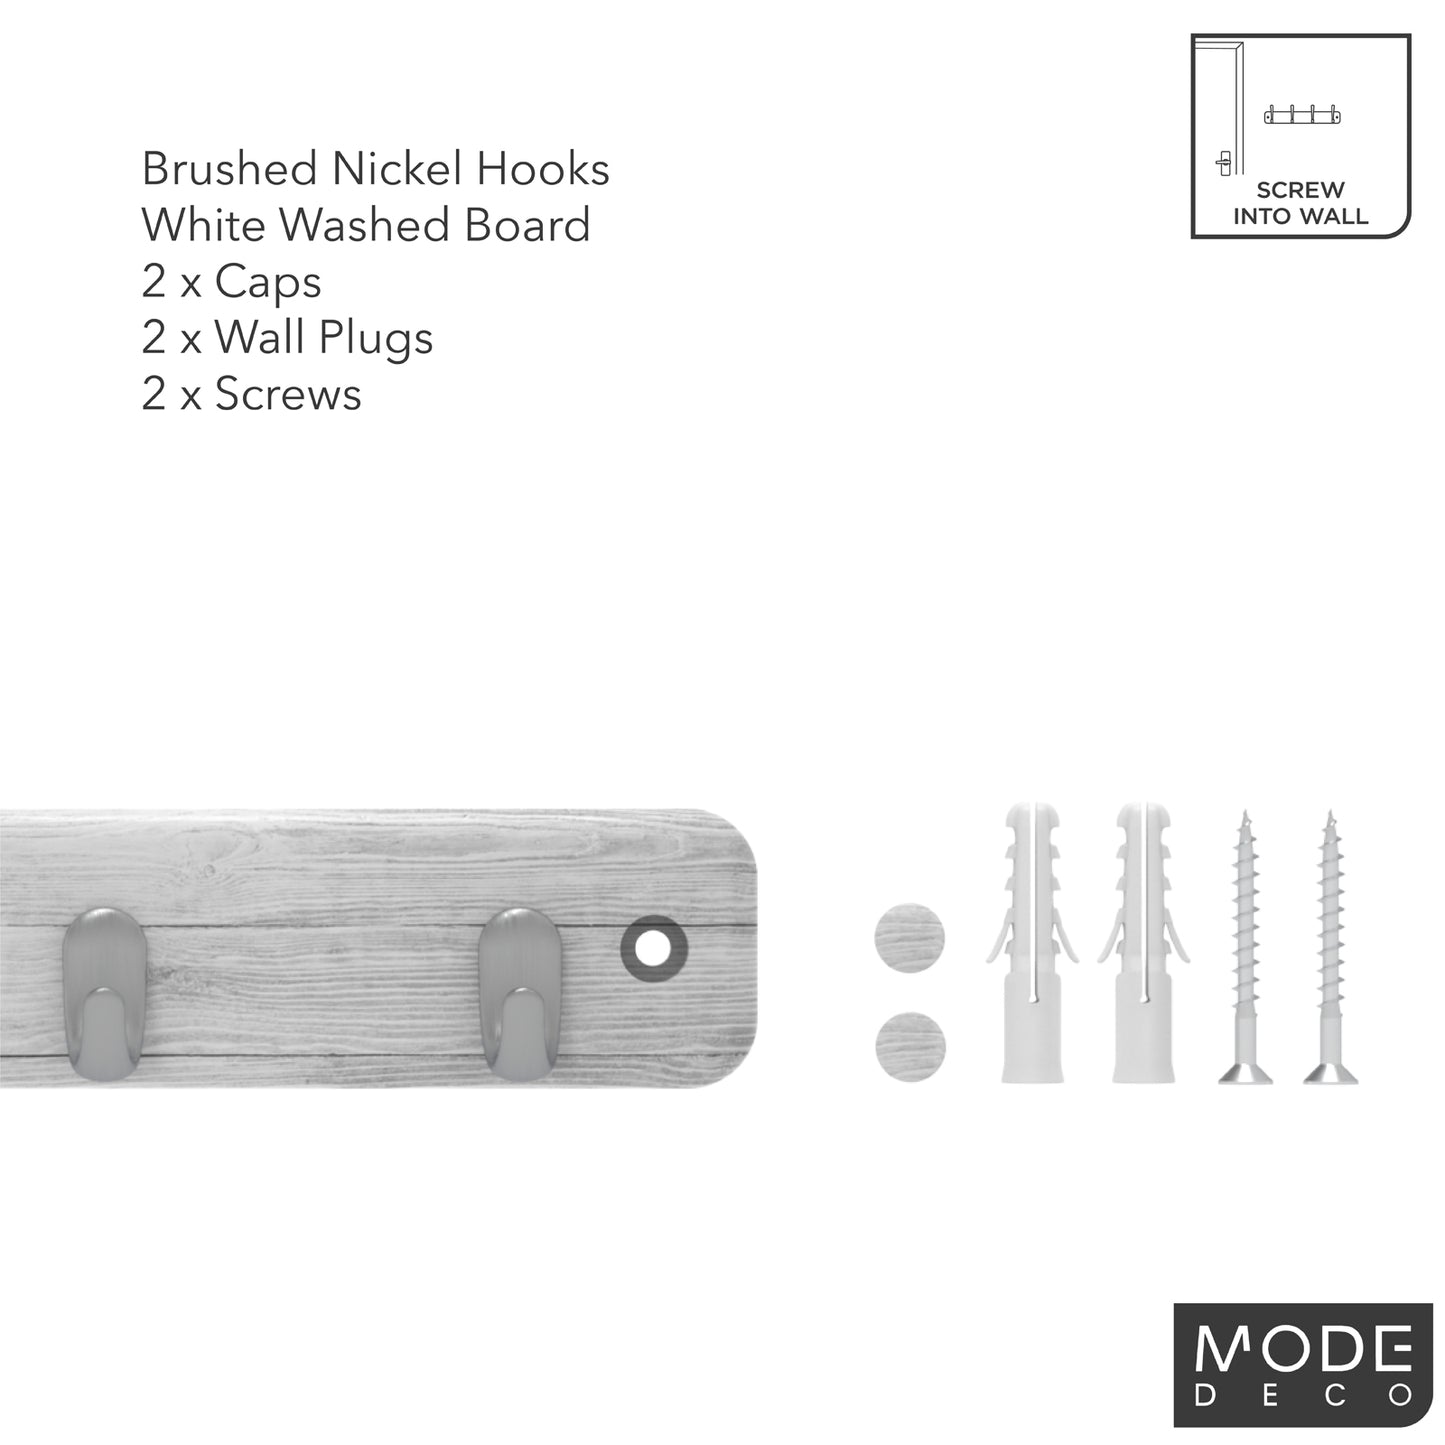 4 Brushed Nickel Hooks on White Wash Board Key Rack